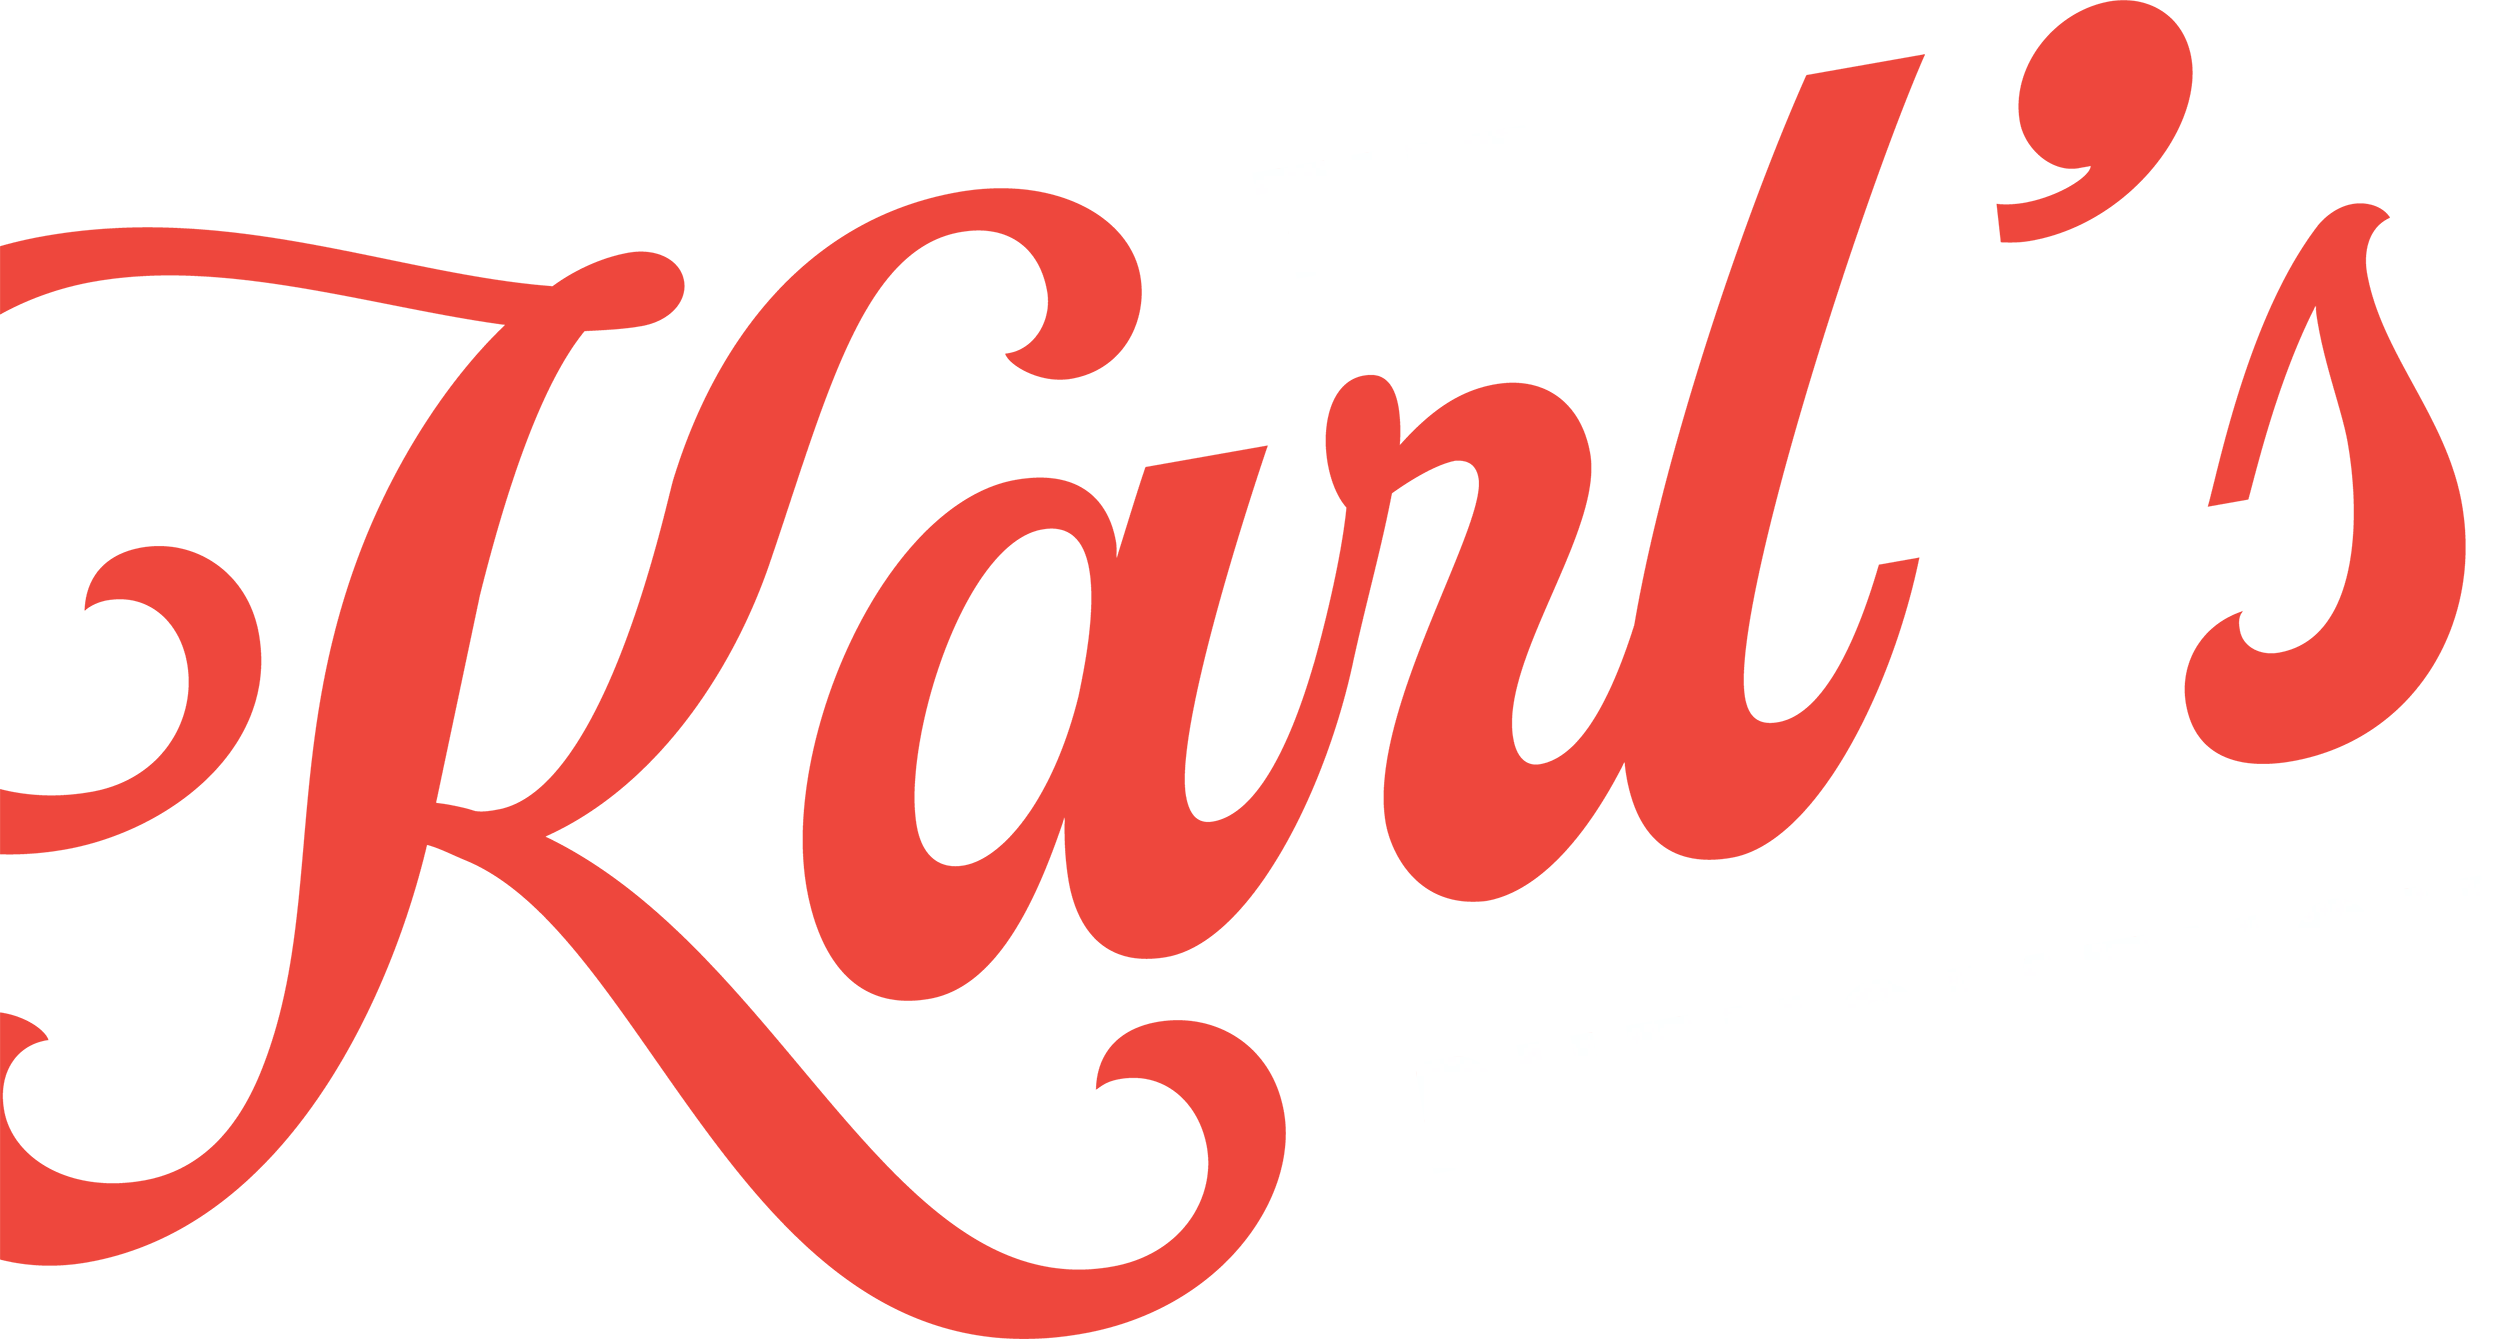 The Karl's Phenomenon title